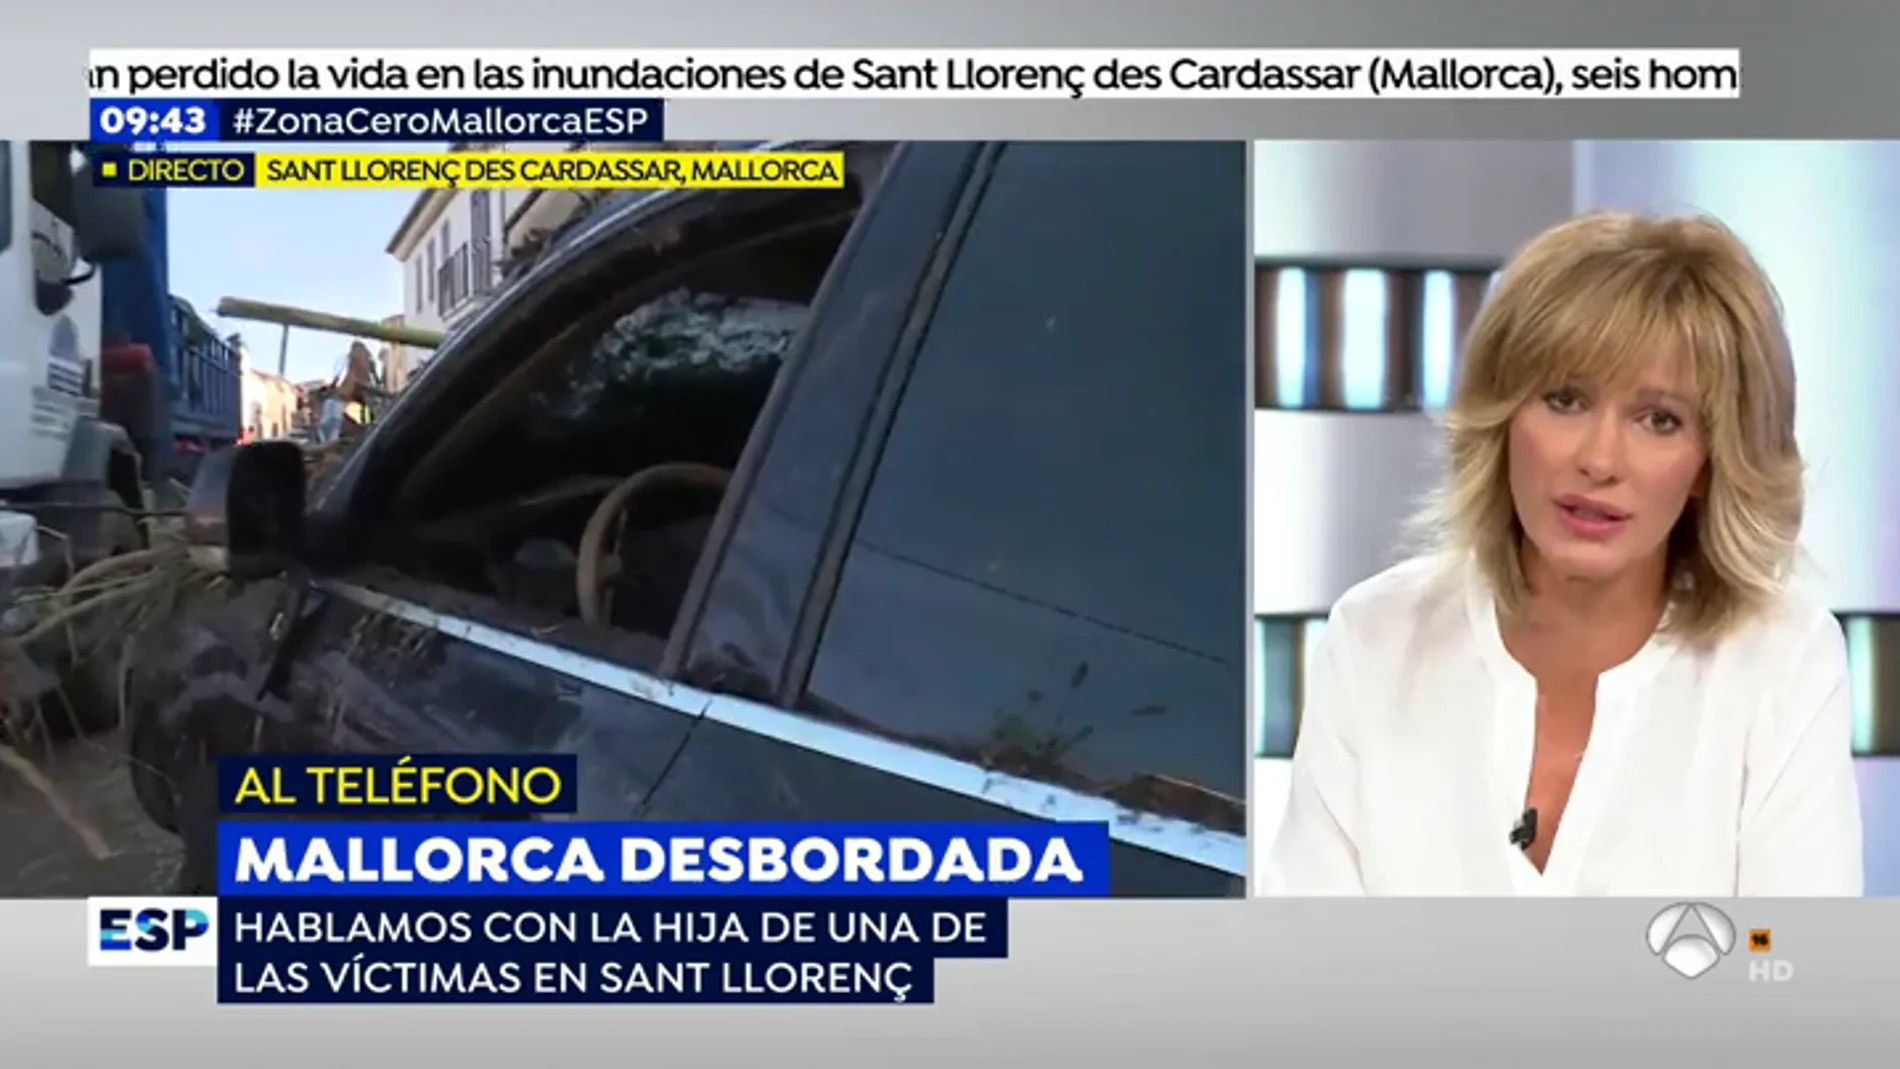 La hija de una víctima de las inundaciones de Mallorca: "No me lo creo, todavía no he visto el cuerpo"